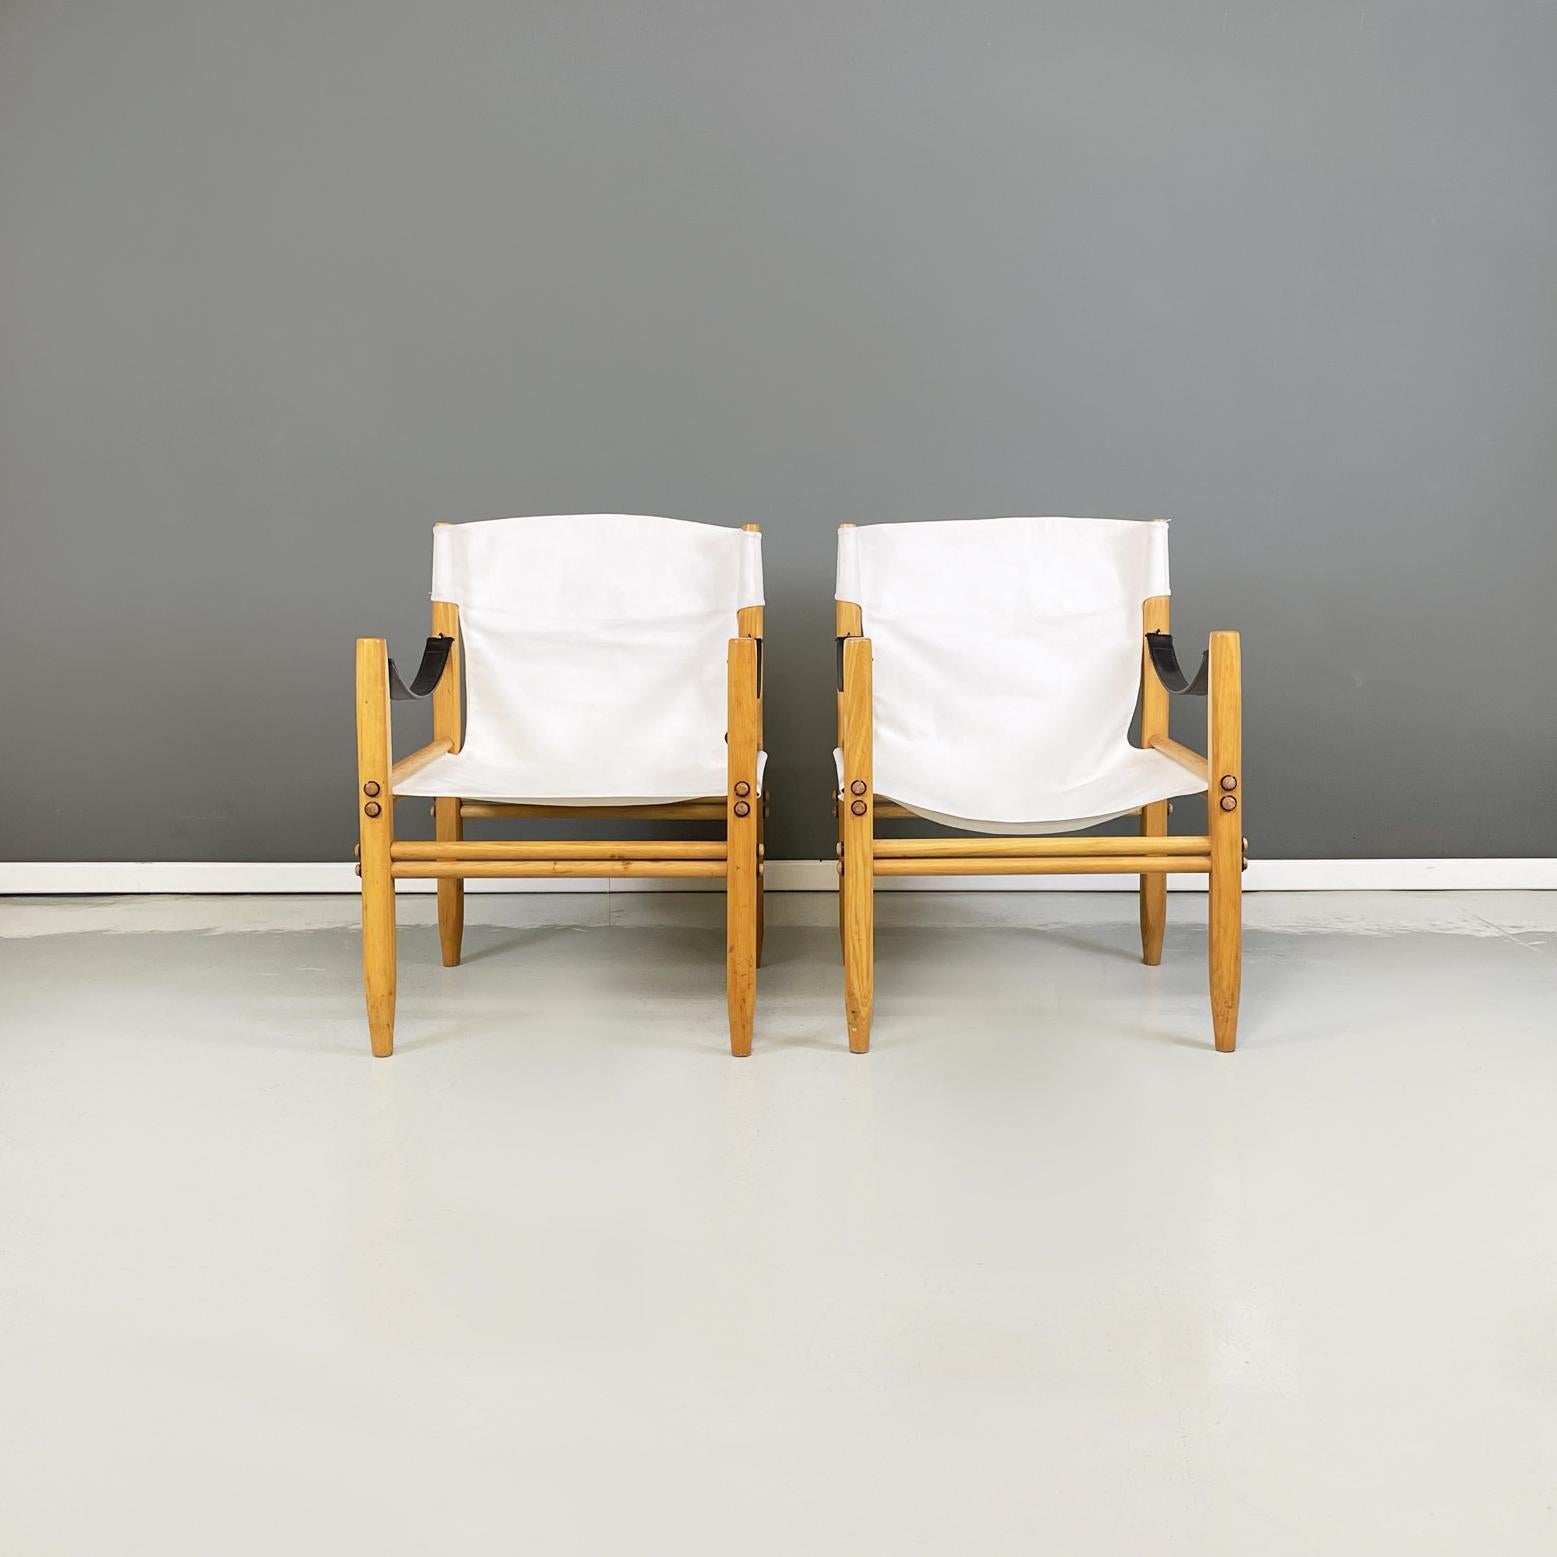 Italienische Sessel aus der Mitte des Jahrhunderts Oasi 85 Safari von Gian Franco Legler Zanotta, 1960er Jahre
Paar Sessel mod. Oasi 85, auch bekannt als Safari, in weißem Stoff und hellem Holz. Sitz und Rückenlehne bestehen aus einem einzigen